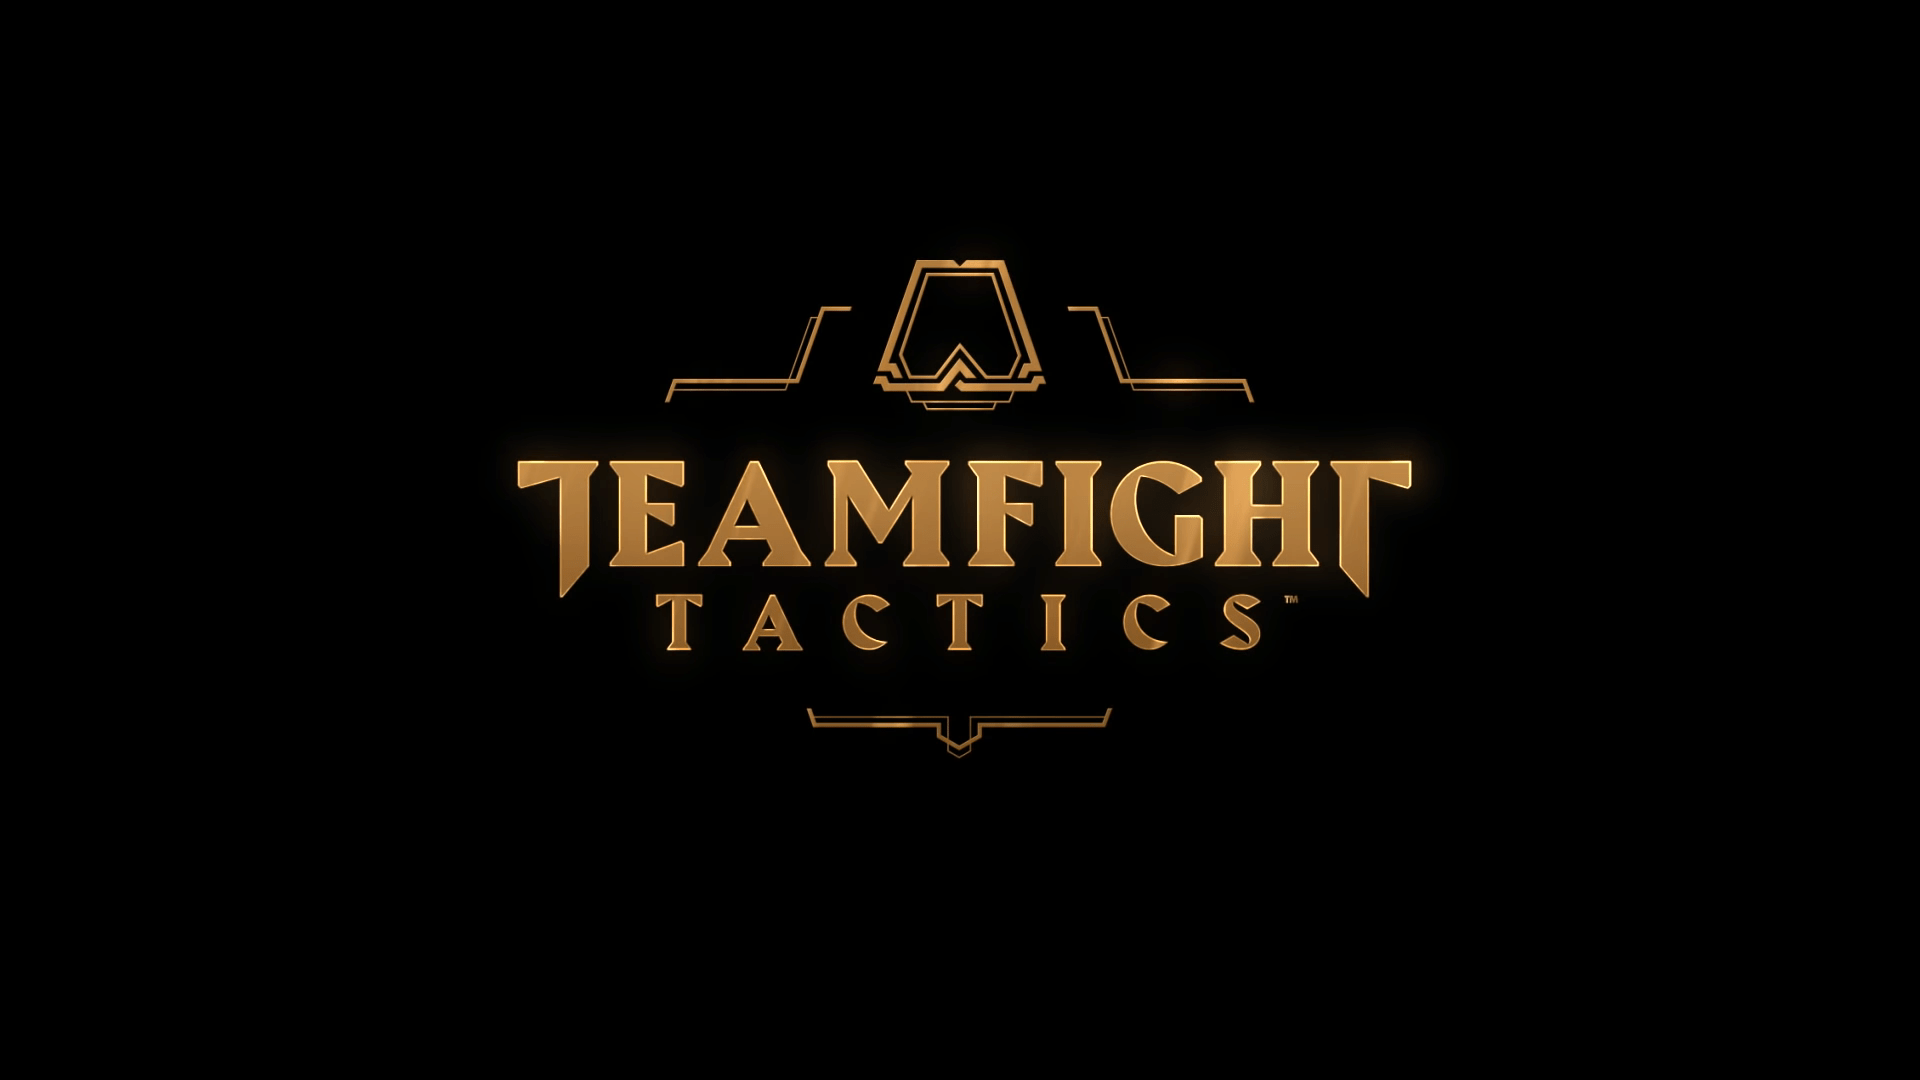 Teamfight Tactics: veja melhores composições do TFT, modo do LoL